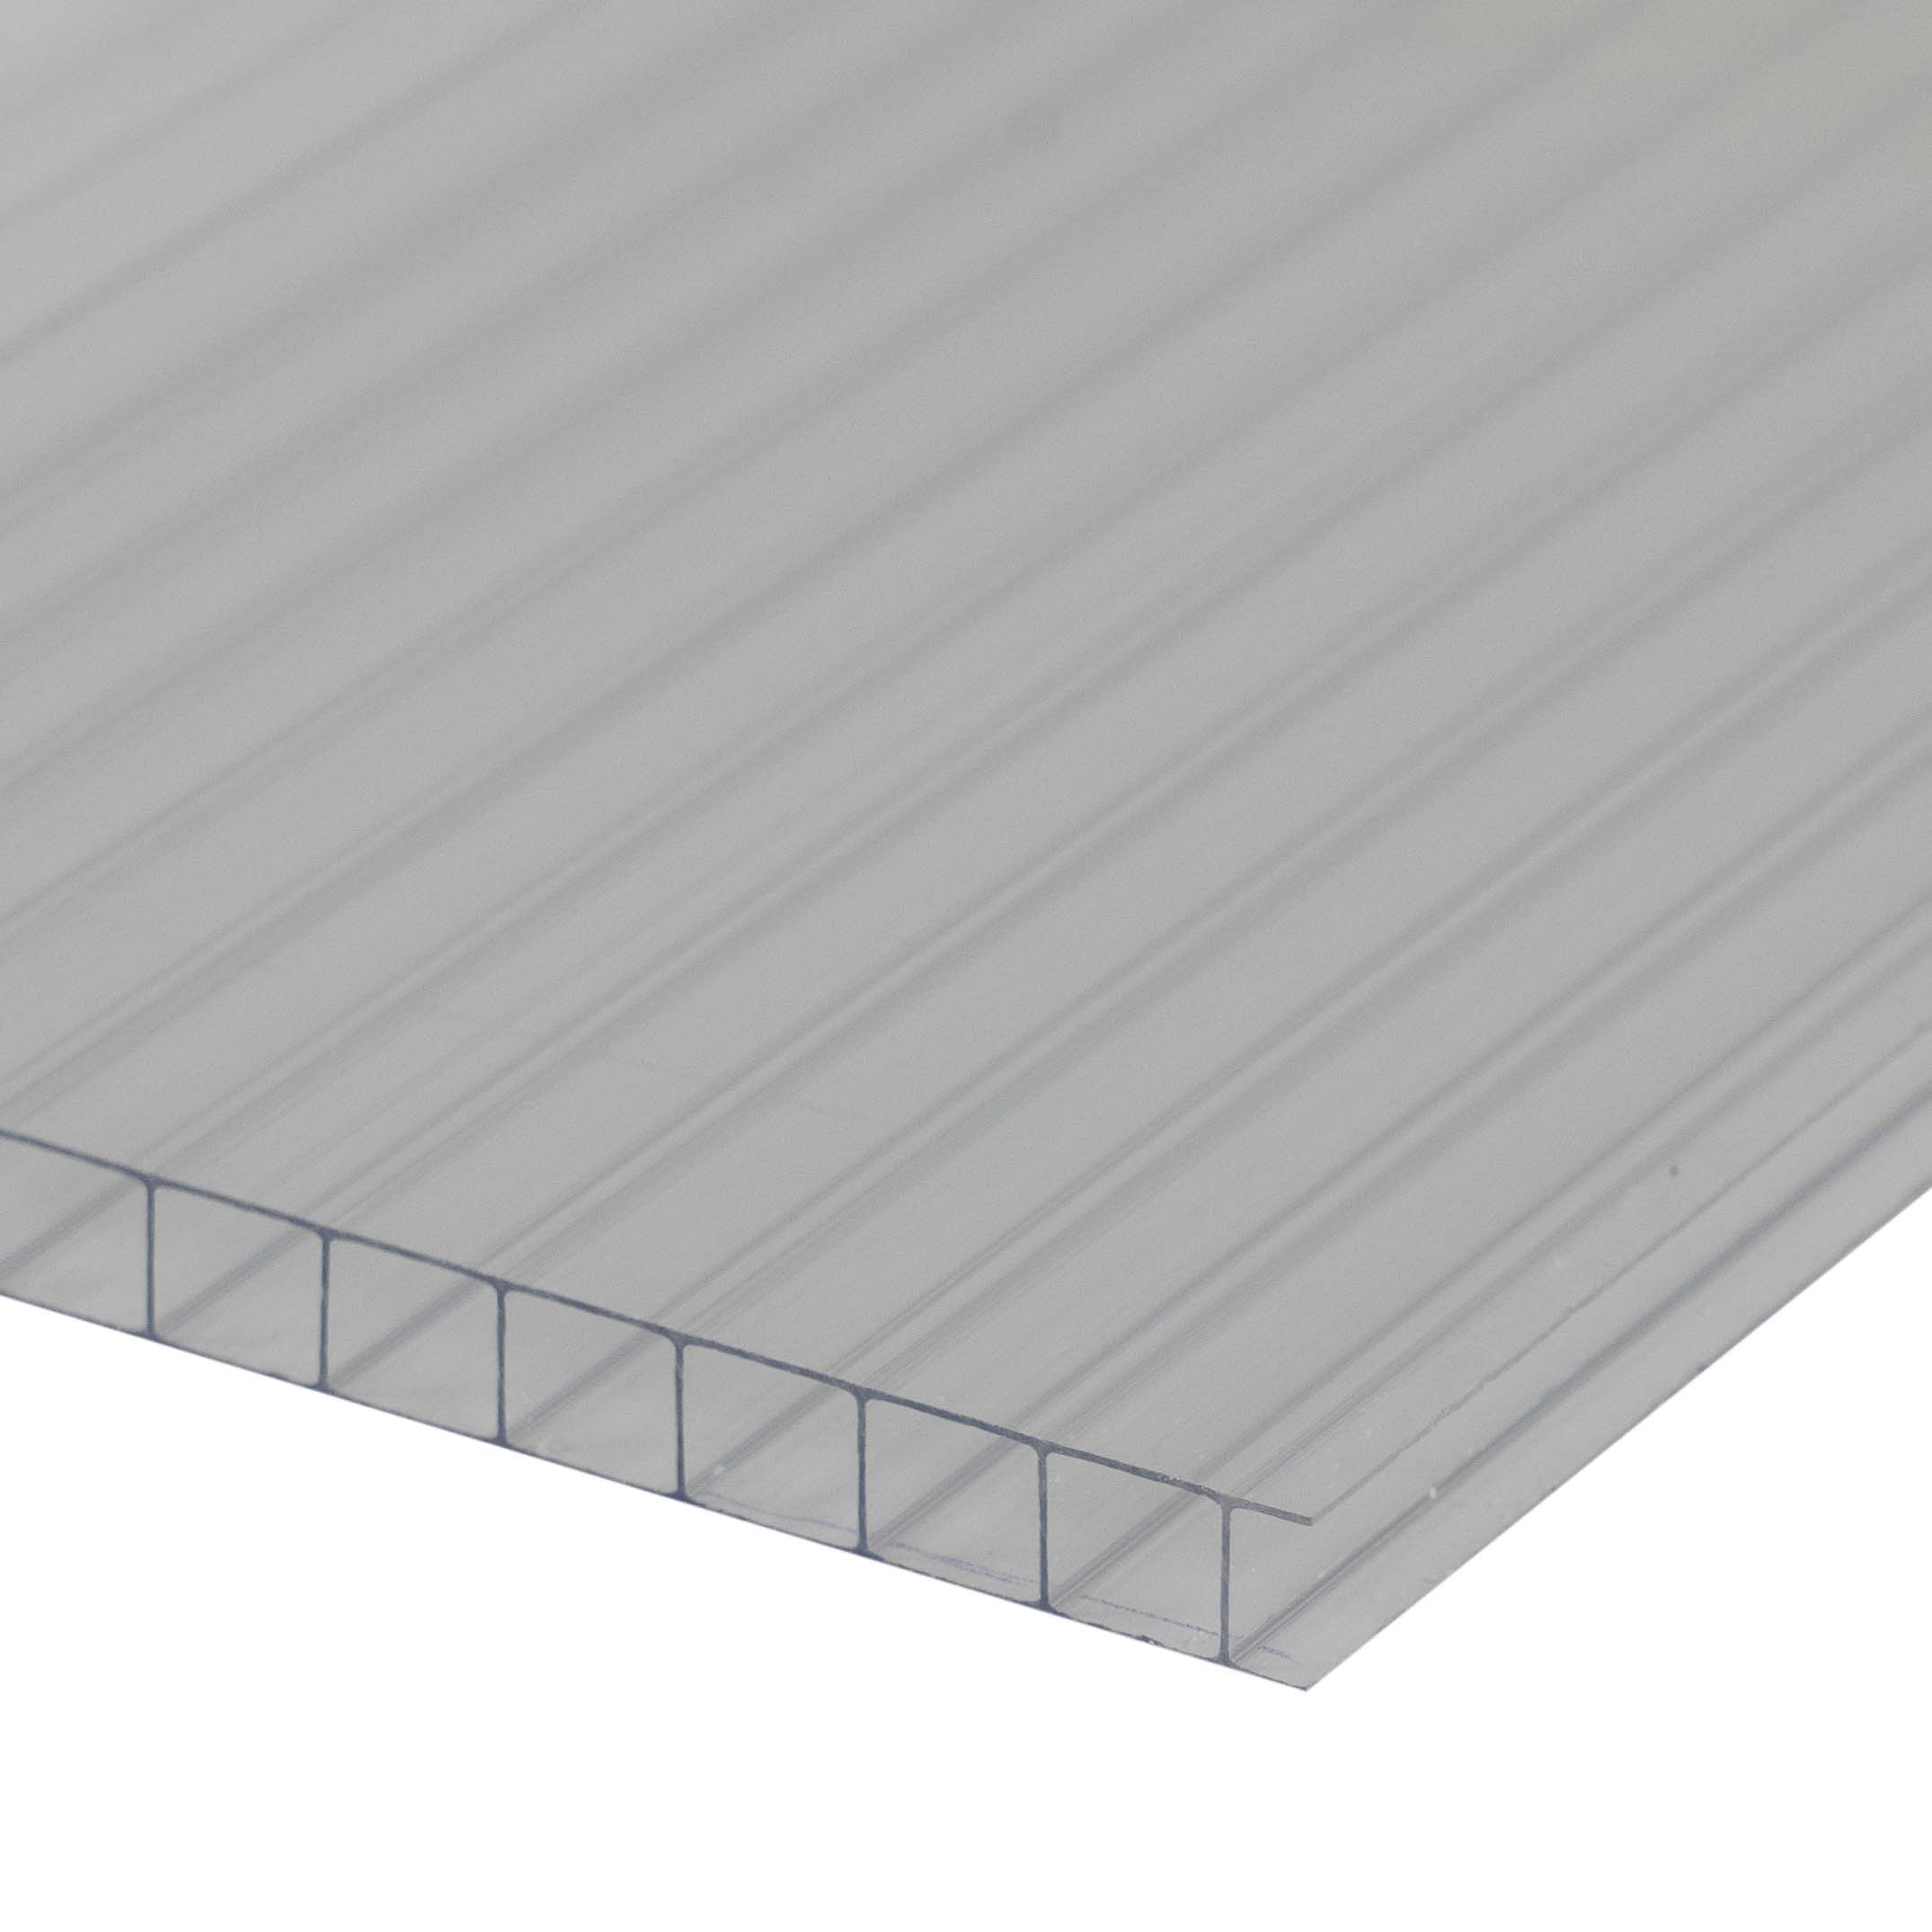 Doppelstegplatte 10 mm Farblos / Klar - Polycarbonat Hohlkammerplatten - Hagelfest 